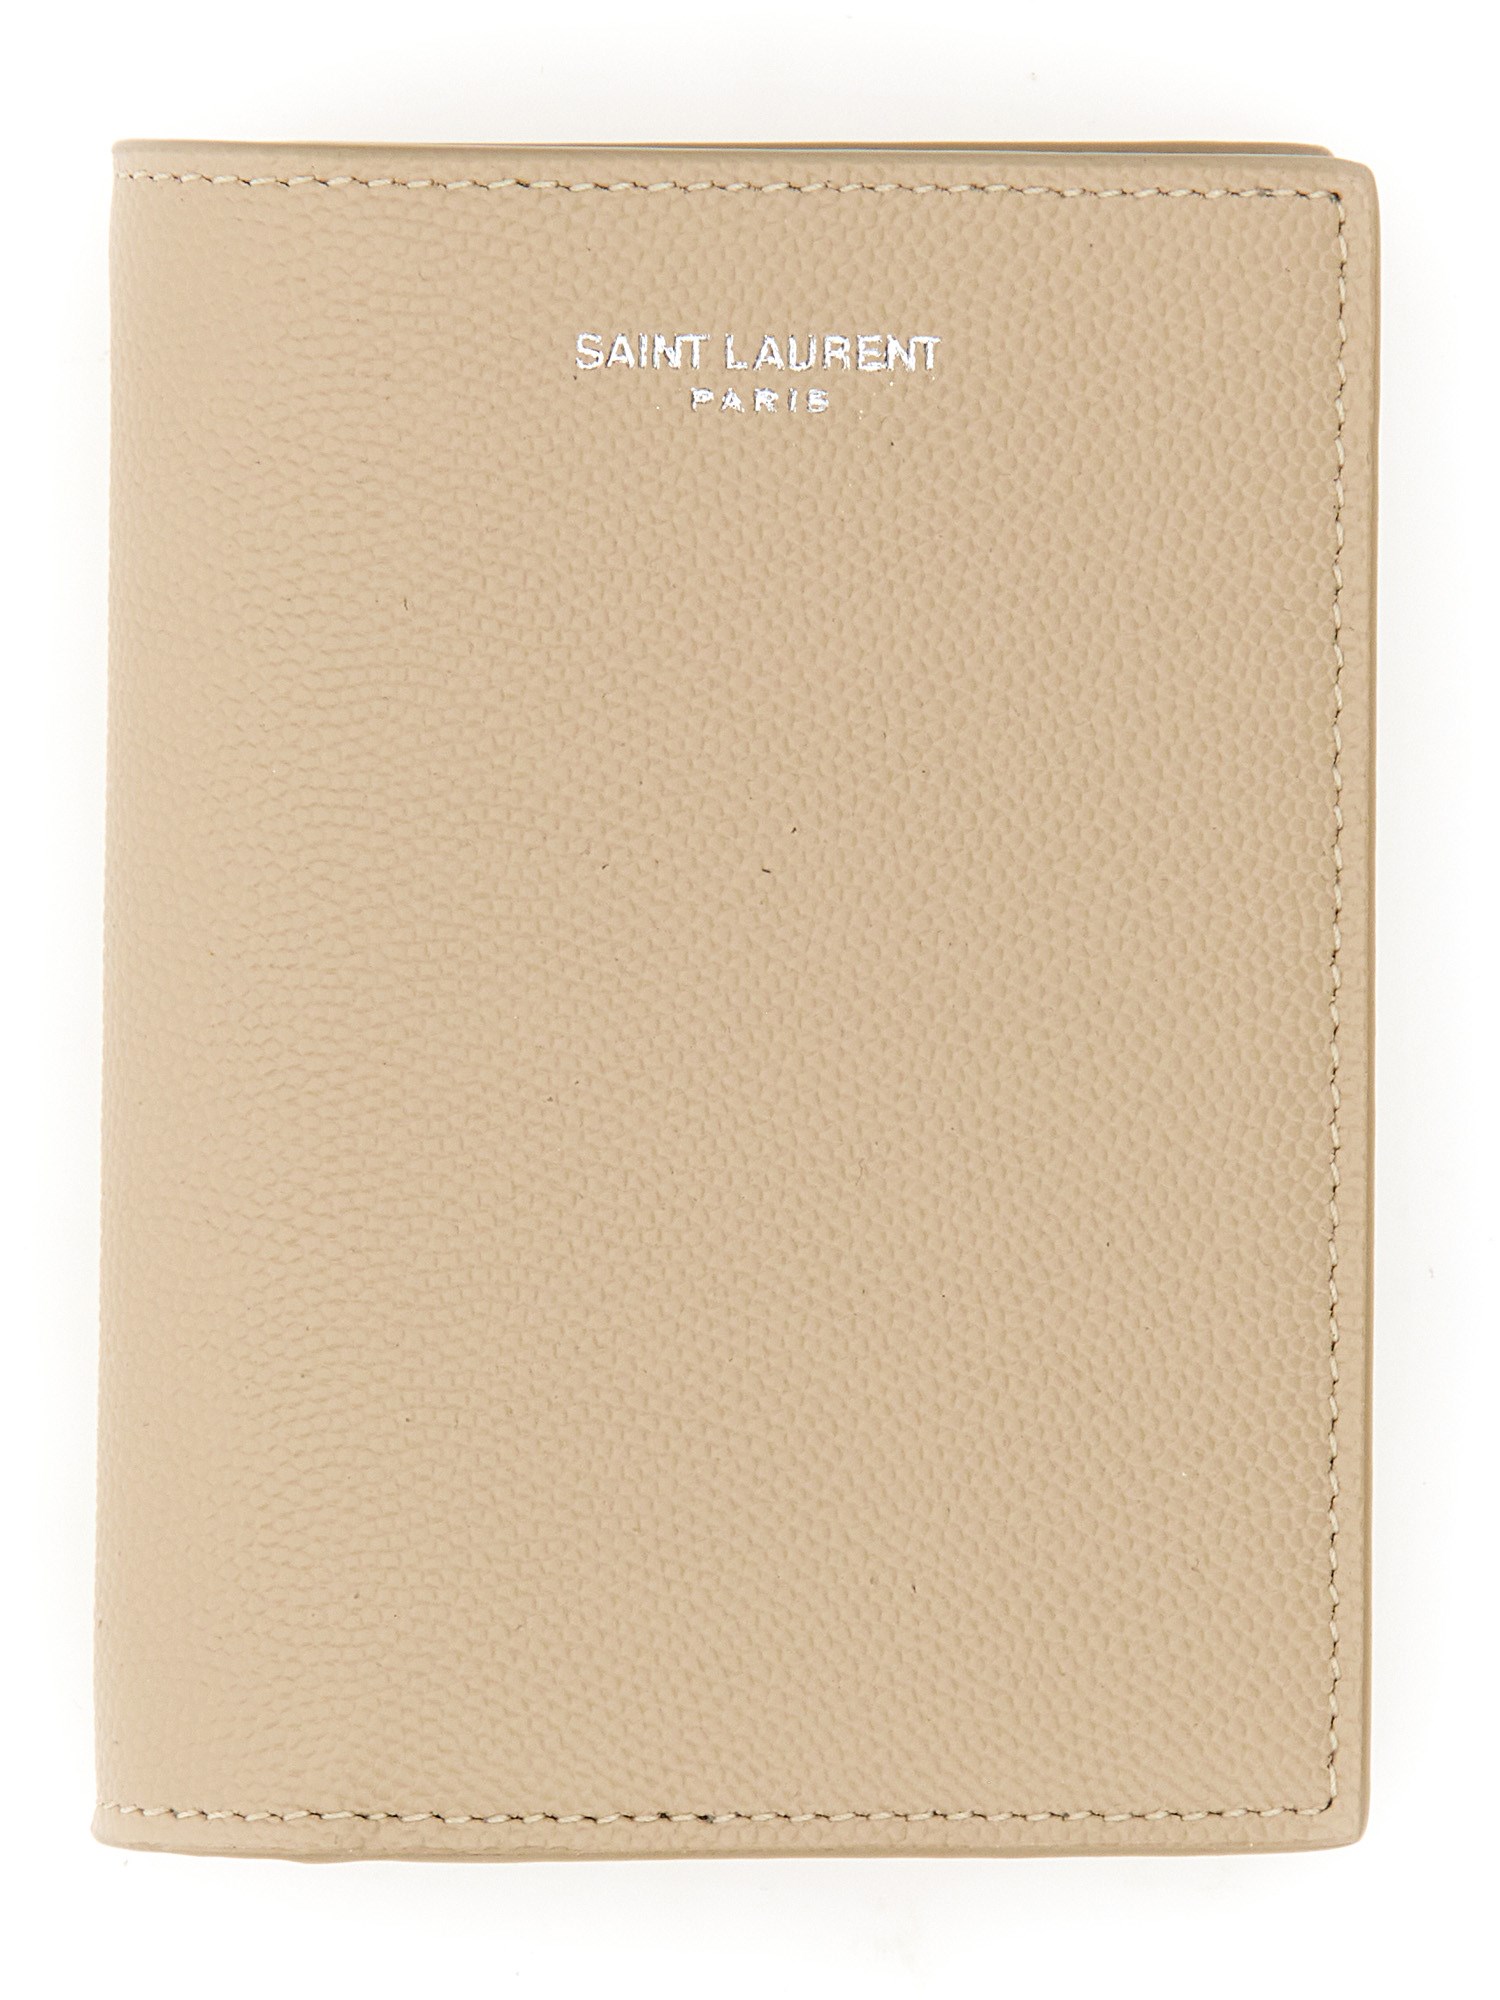 Saint Laurent saint laurent credit card holder with logo